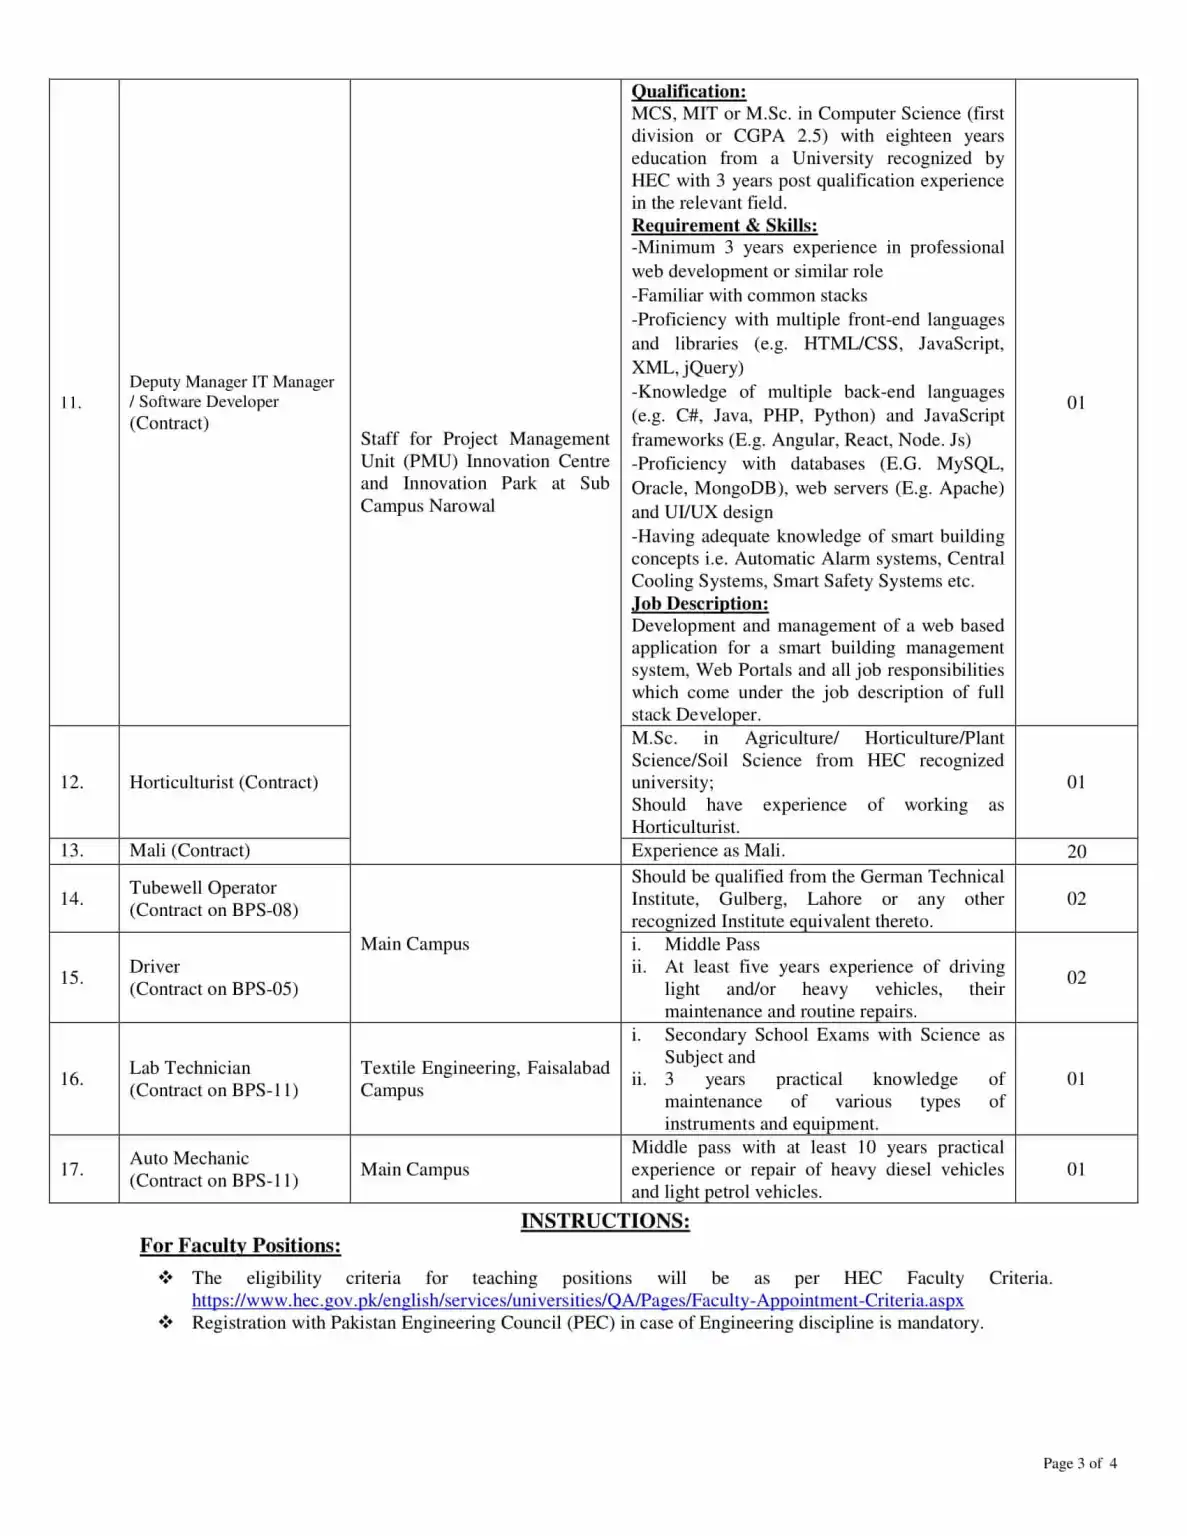 UET Lahore Jobs 2023